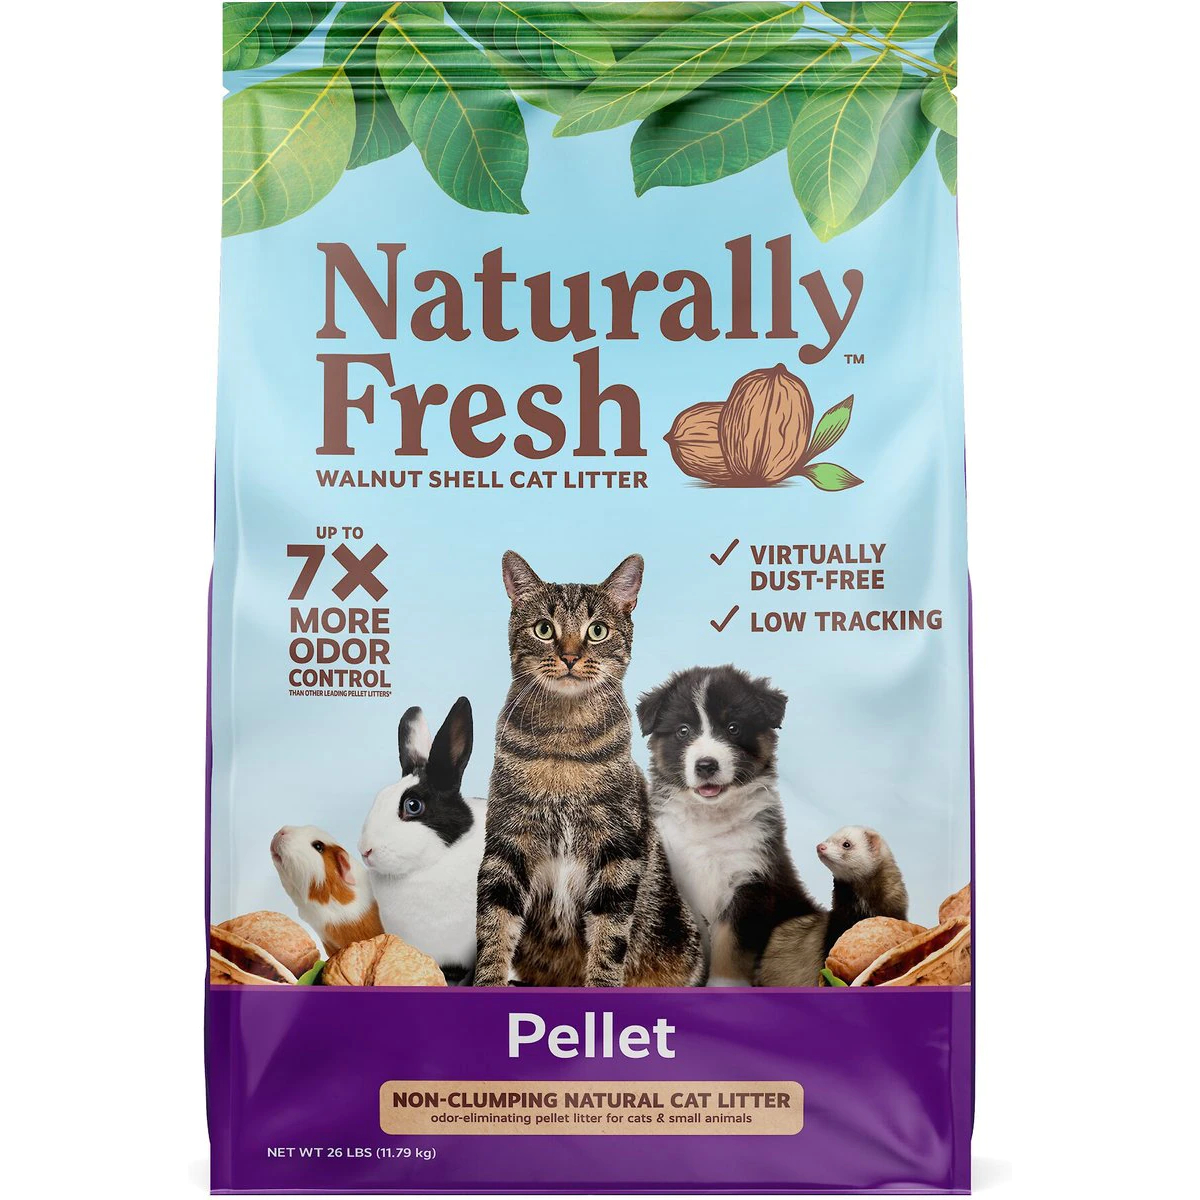 Naturally Fresh Pellet Unscented Non-Clumping Walnut Cat Litter New